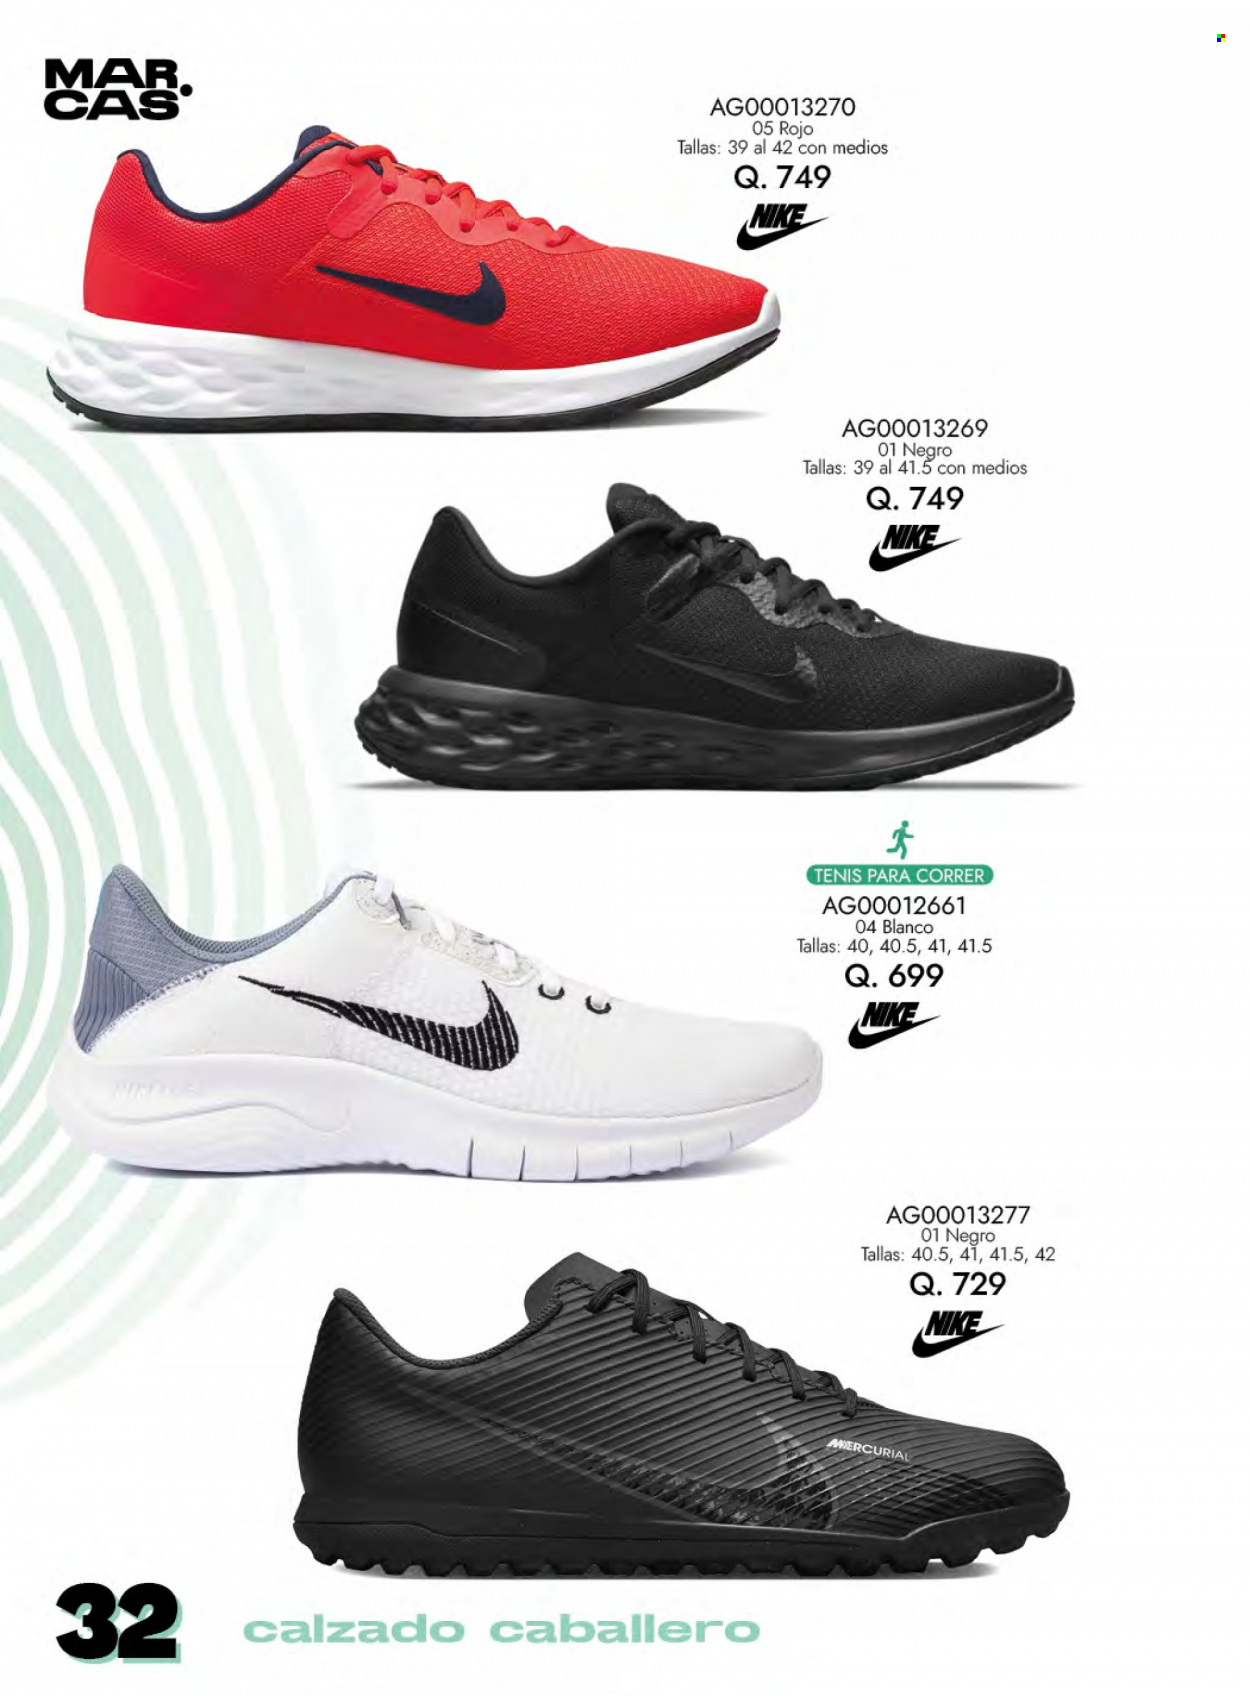 Folleto actual Agora - Ventas - Nike, calzado caballero. Página 32.